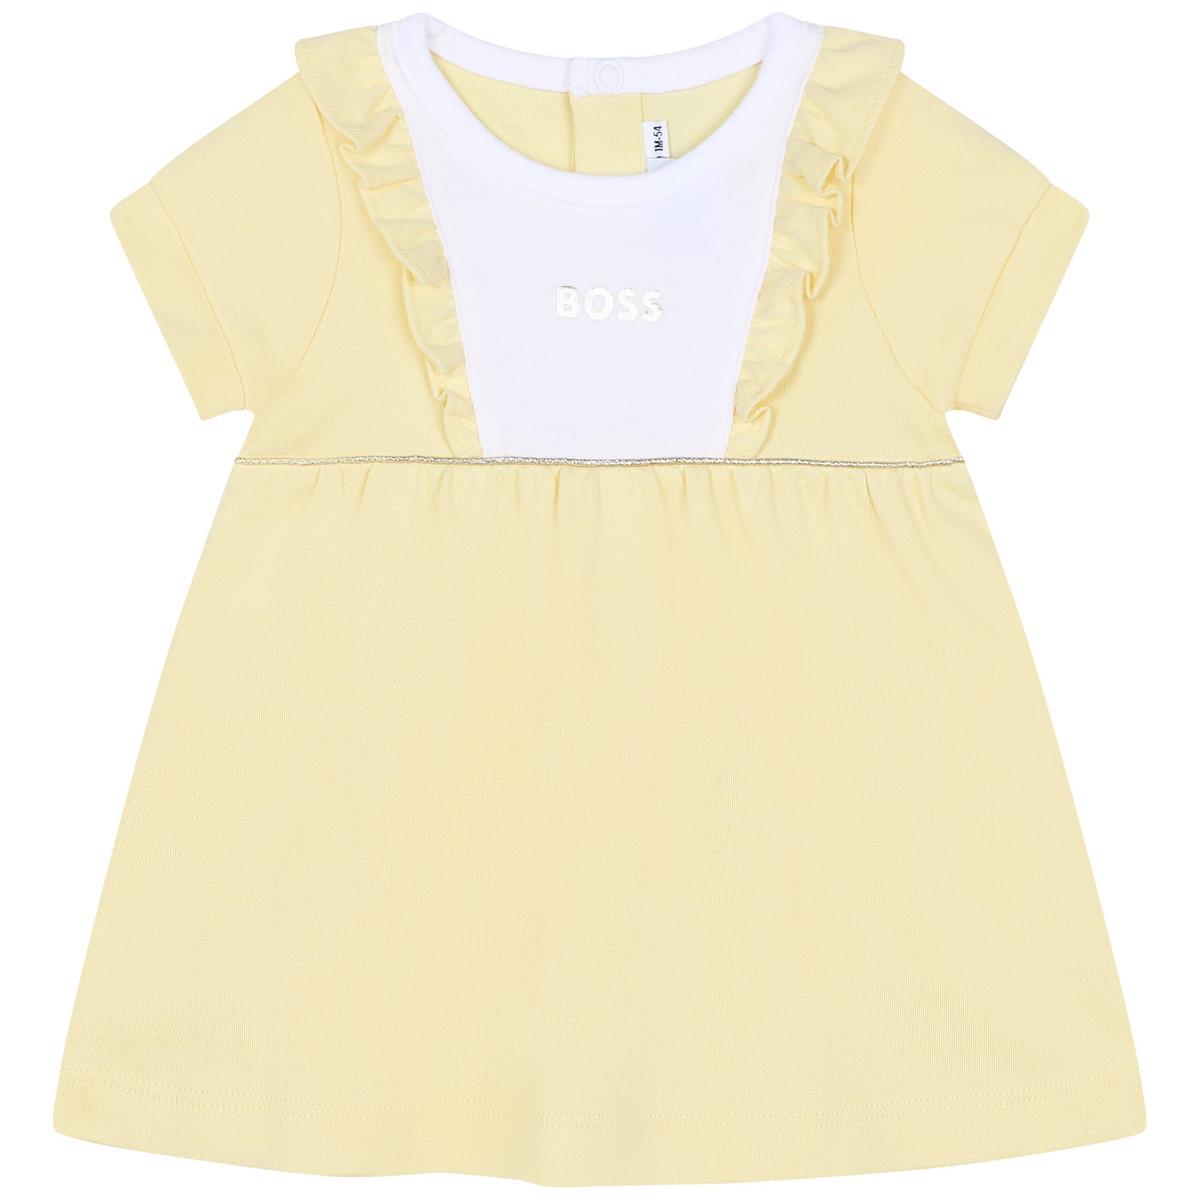 Baby Girls Yellow Dress